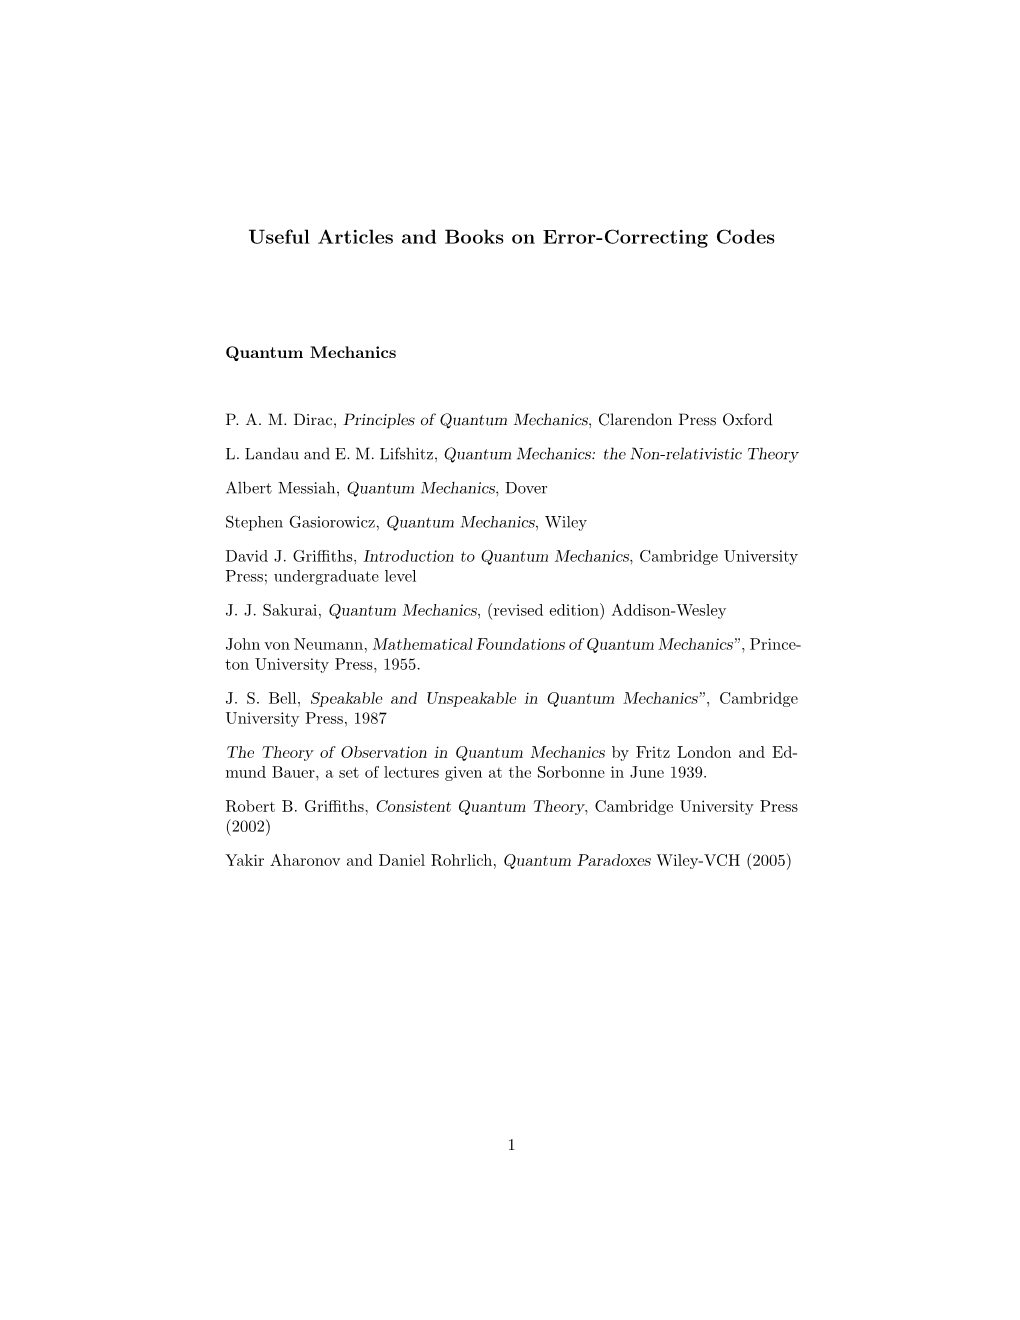 Books on Classical and Quantum Error-Correcting Codes